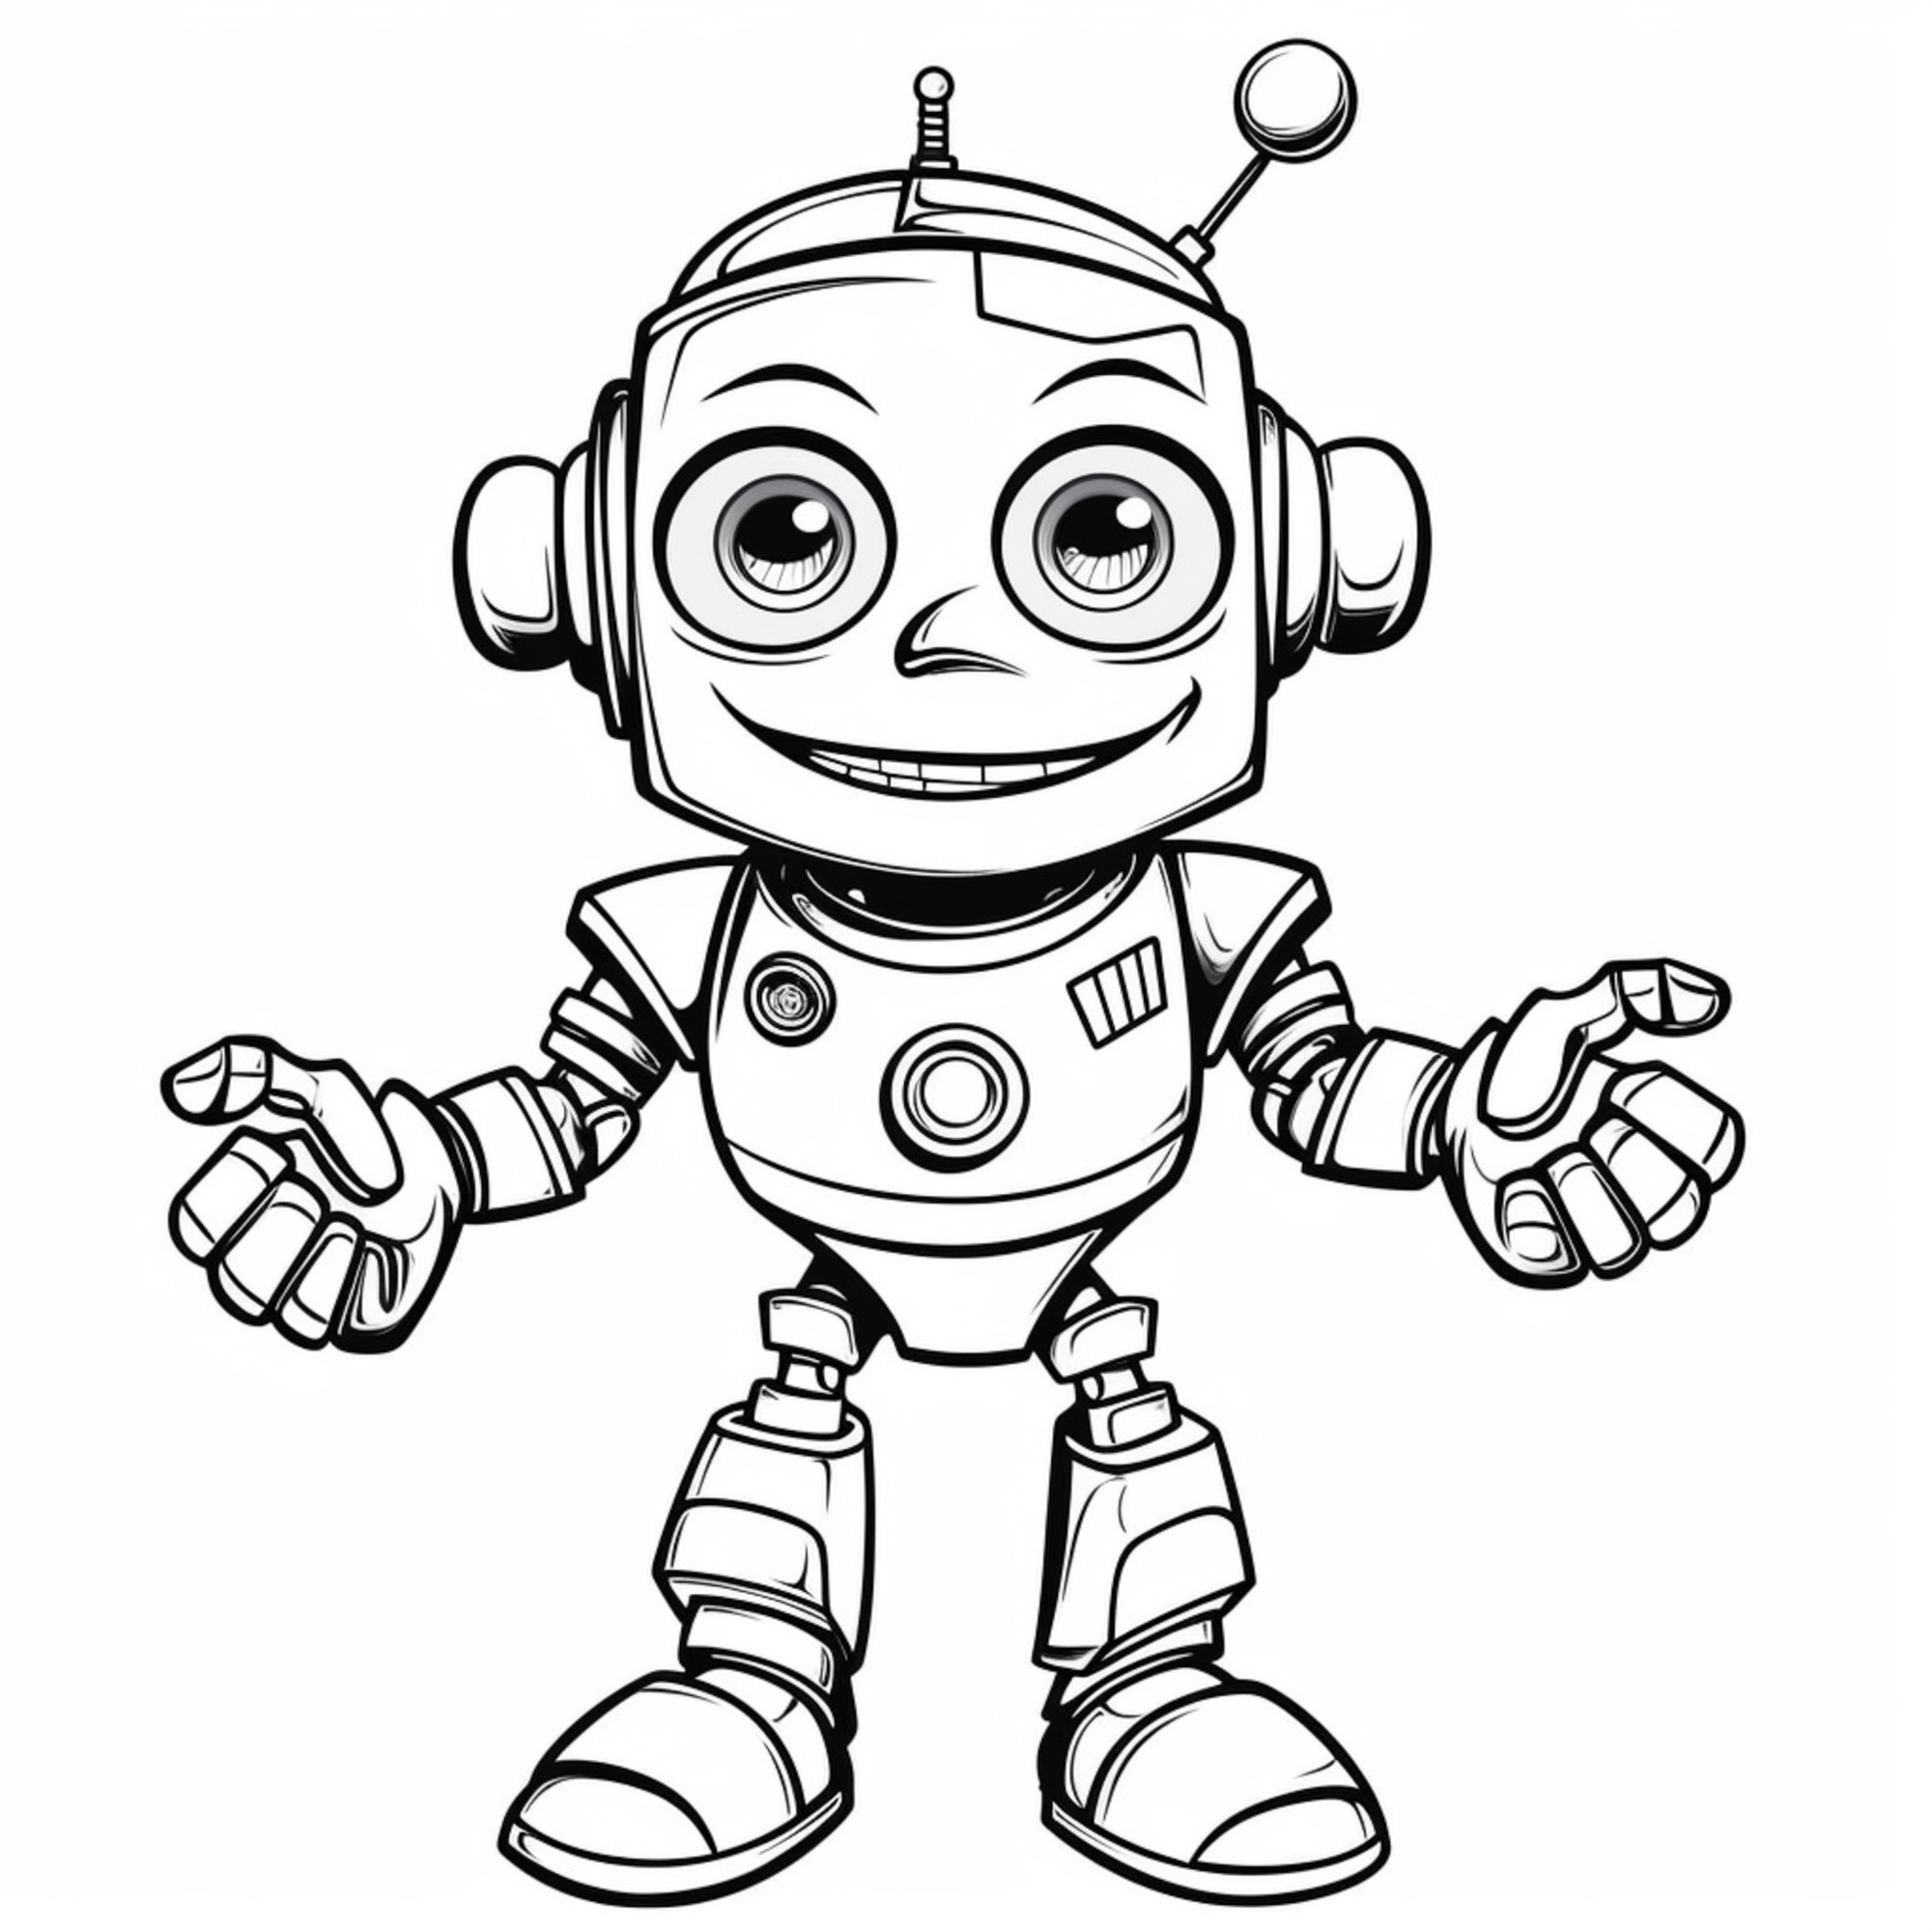 Раскраска для детей: умный робот-помощник